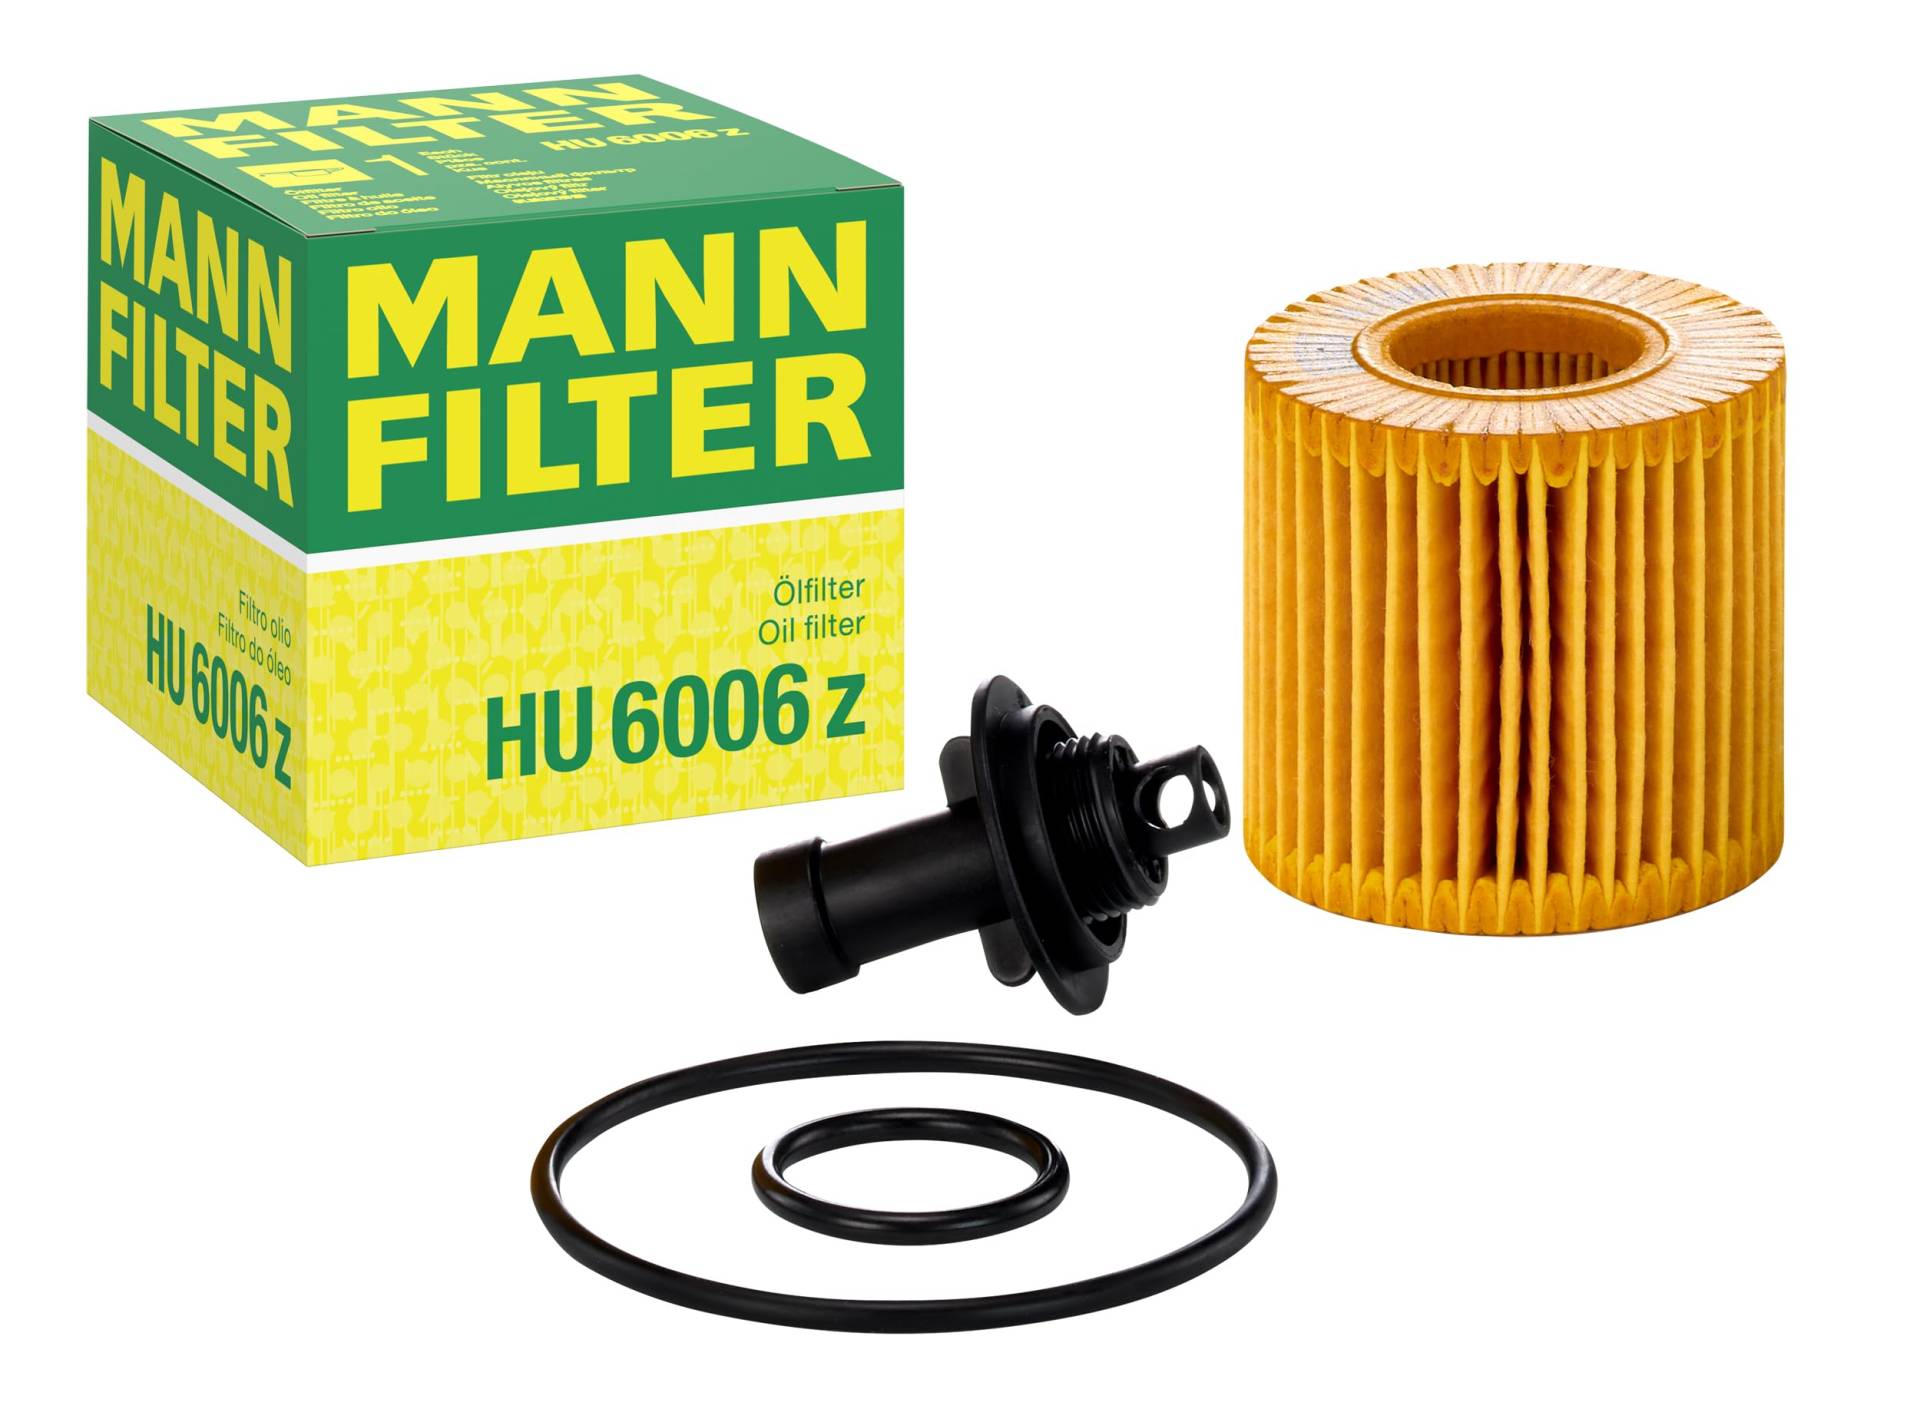 MANN-FILTER HU 6006 z Ölfilter – Ölfilter Satz mit Dichtung / Dichtungssatz – Für PKW von MANN-FILTER